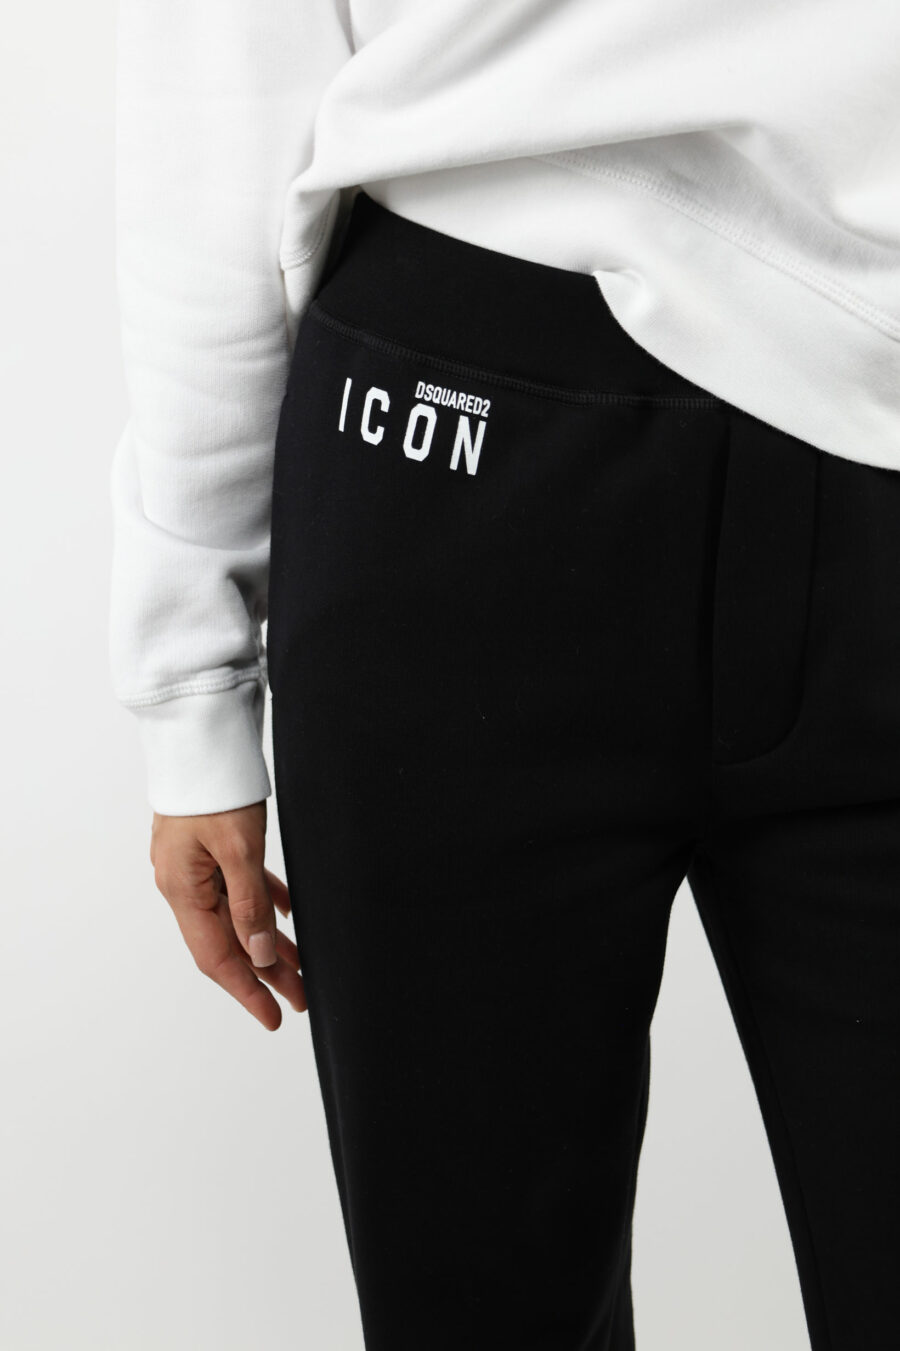 Pantalón de chándal negro con minilogo "icon" y bota ancha - 109770